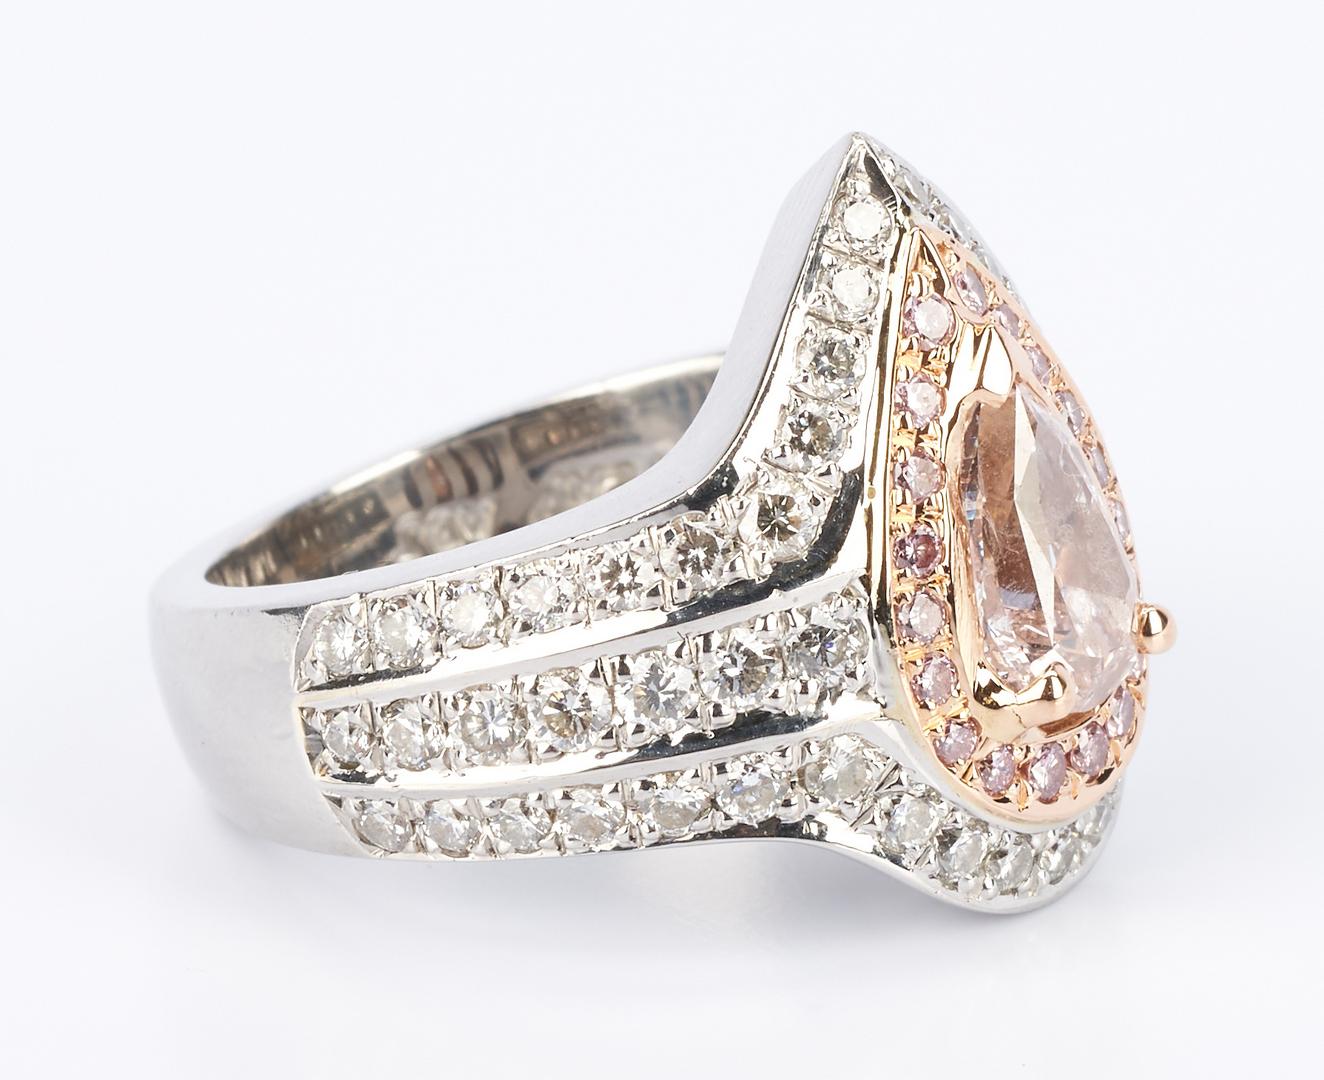 Lot 36: Ladies Platinum and Rose Gold Diamond Ring